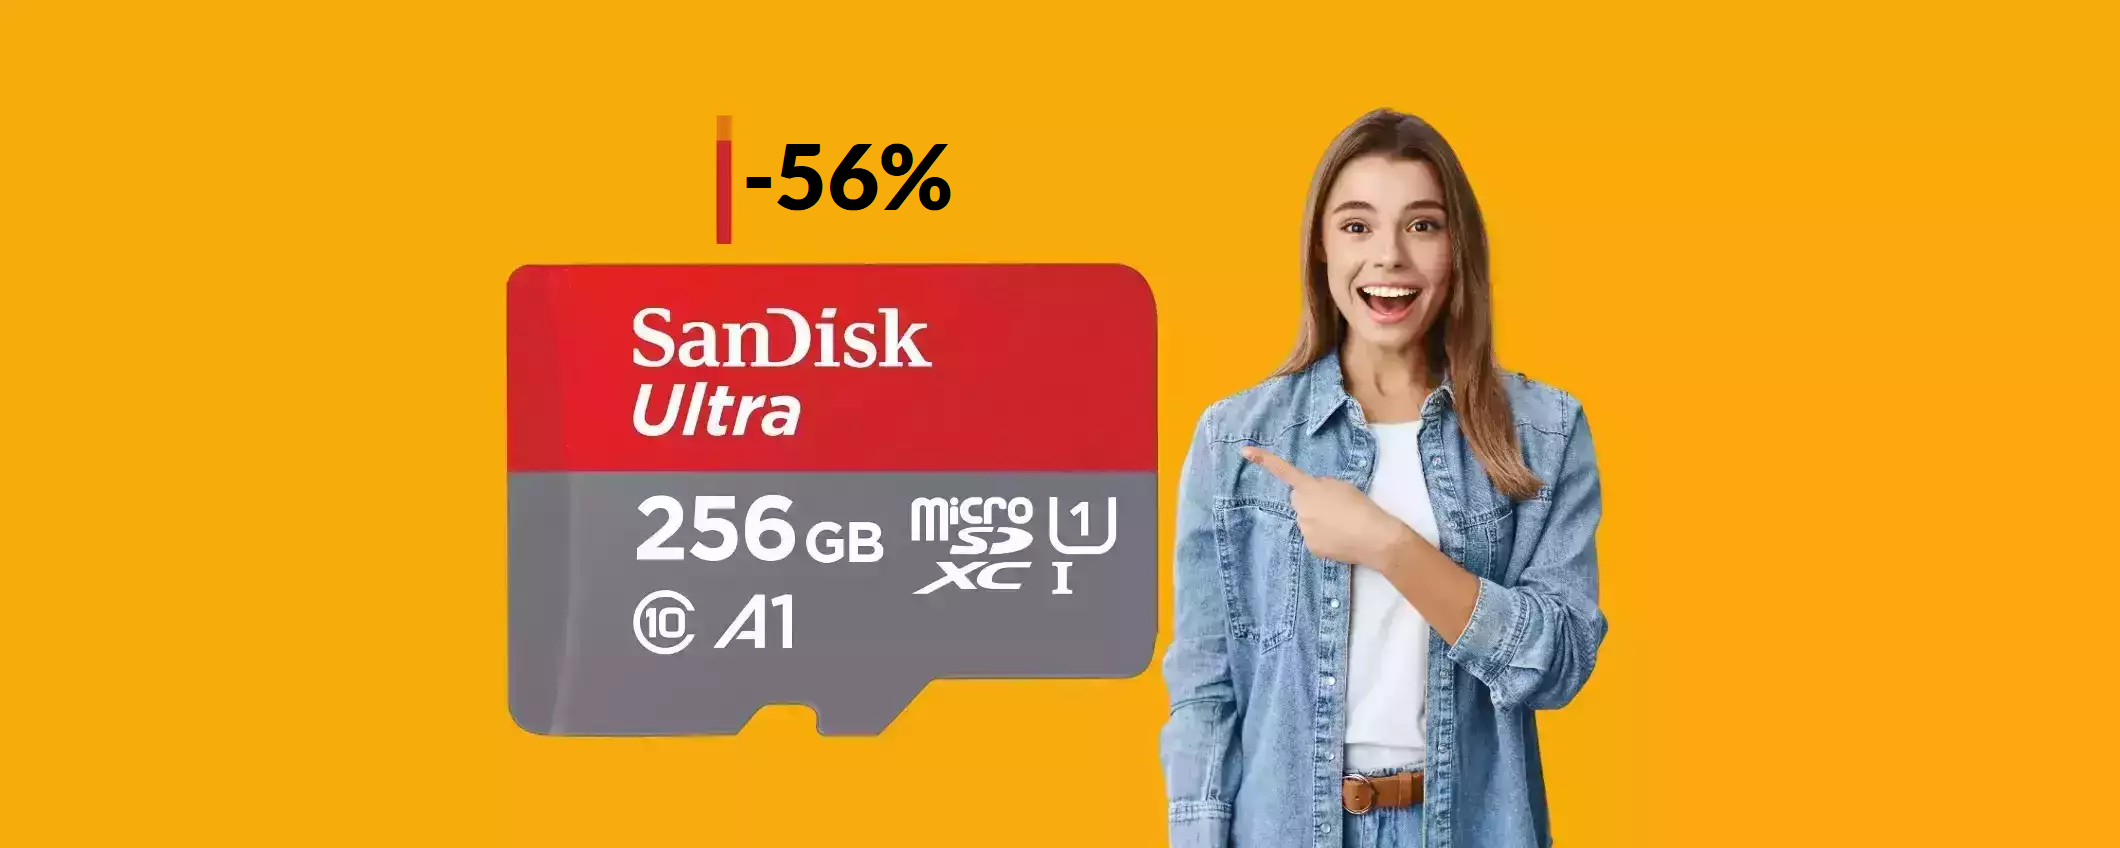 MicroSD SanDisk 256GB a meno di METÀ prezzo: tua con 27€